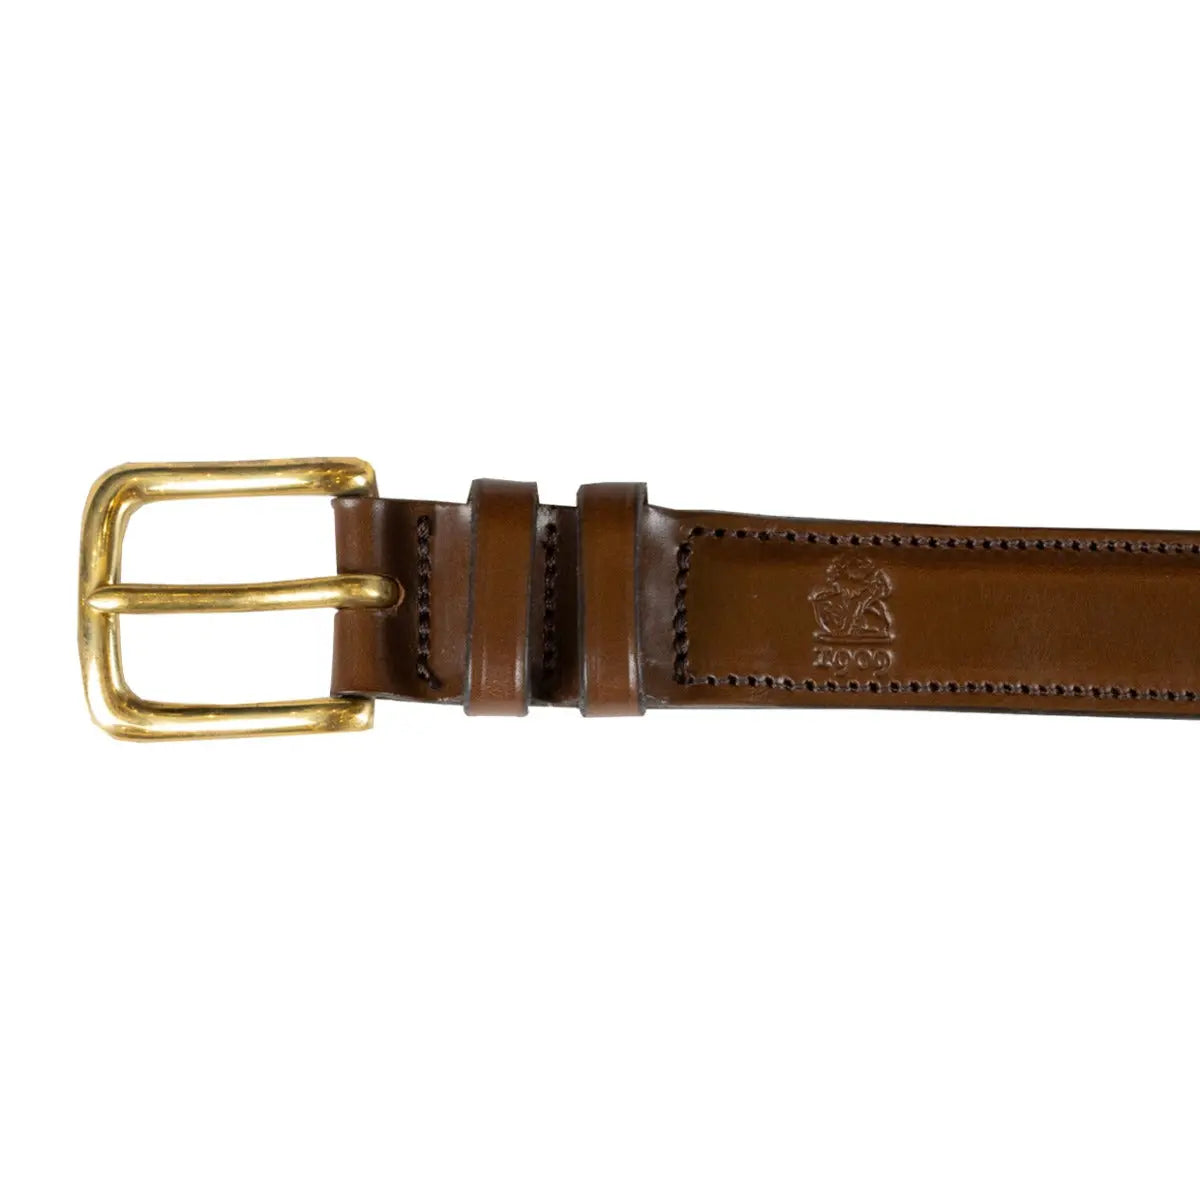 Brown 'Crane' Bridle Hide Leather Belt  Robert Old   